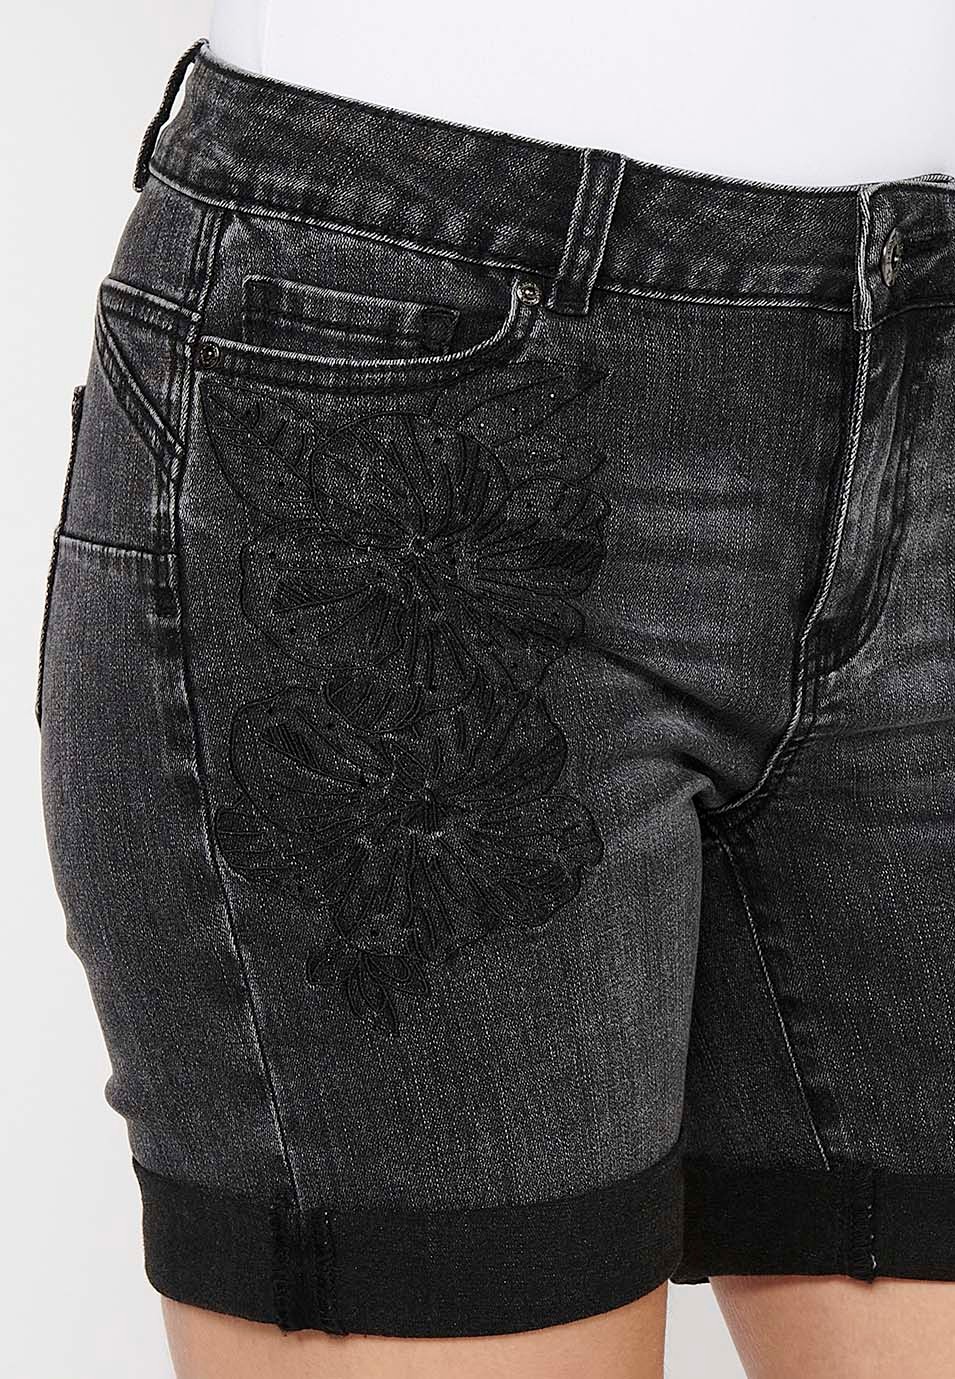 Pantalons curts Short acabat en volta amb Tancament davanter amb cremallera i botó i Brodats florals de Color Negre per a Dona 2